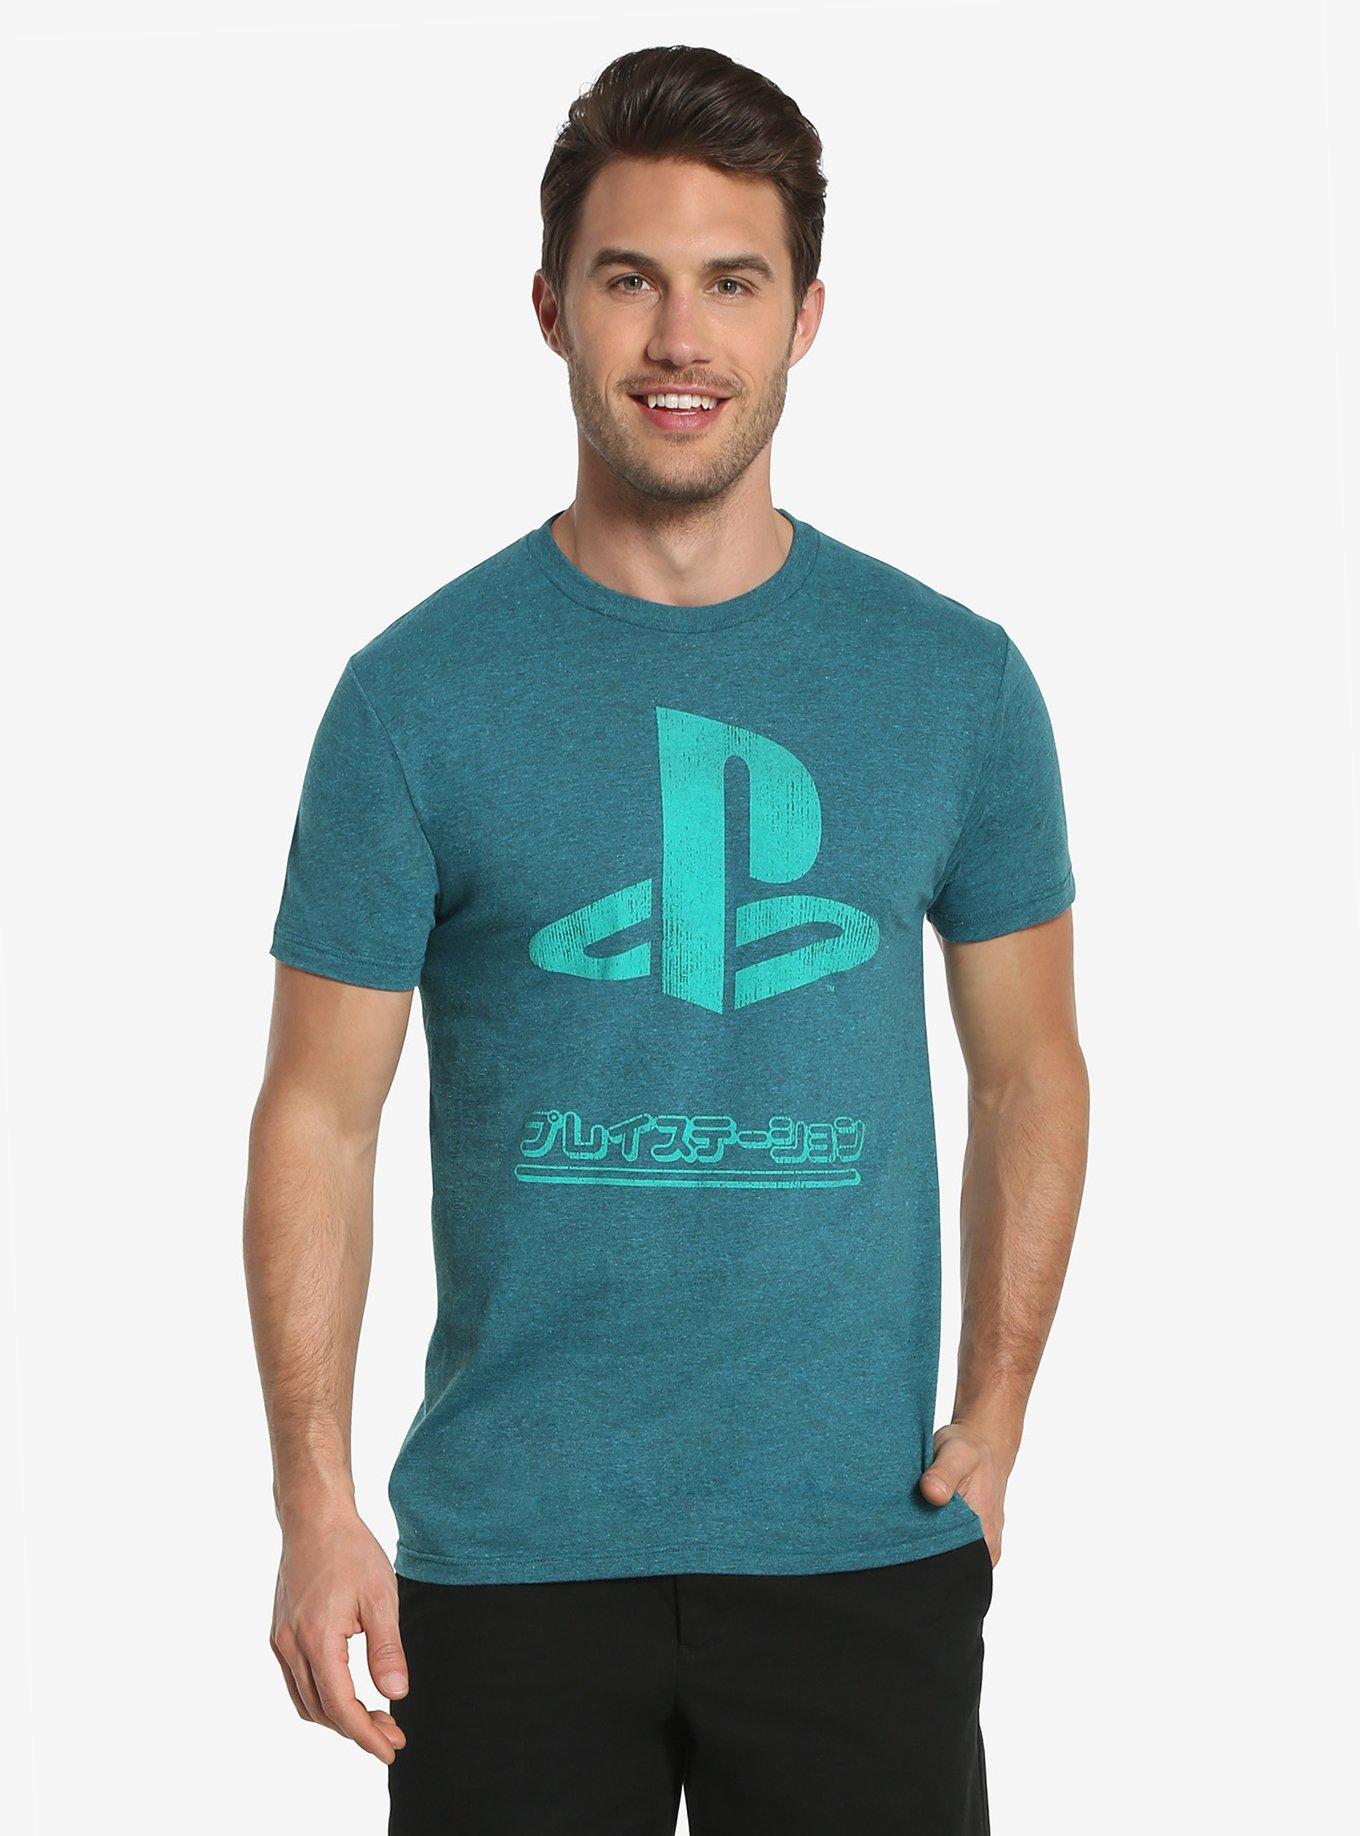 Playstation Vintage Kanji T-Shirt, TEAL, hi-res